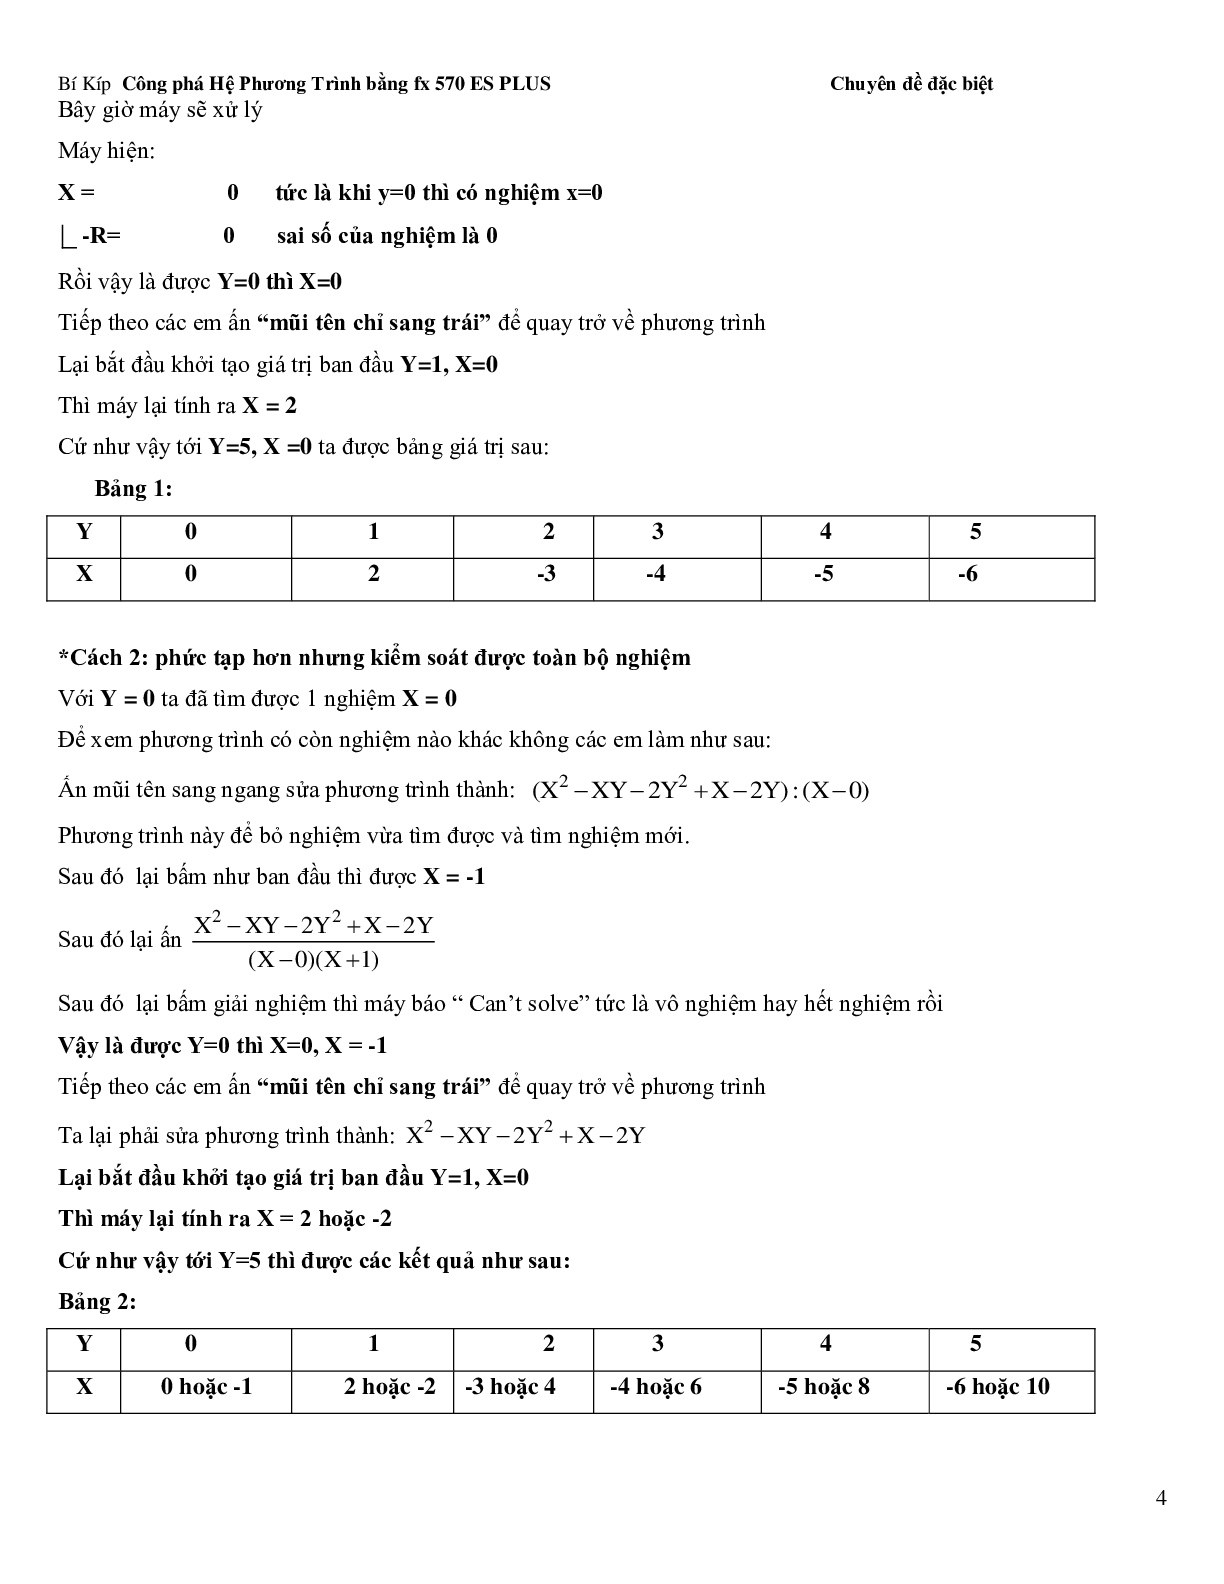 Bí kíp để giải hệ phương trình bằng Casio (trang 4)